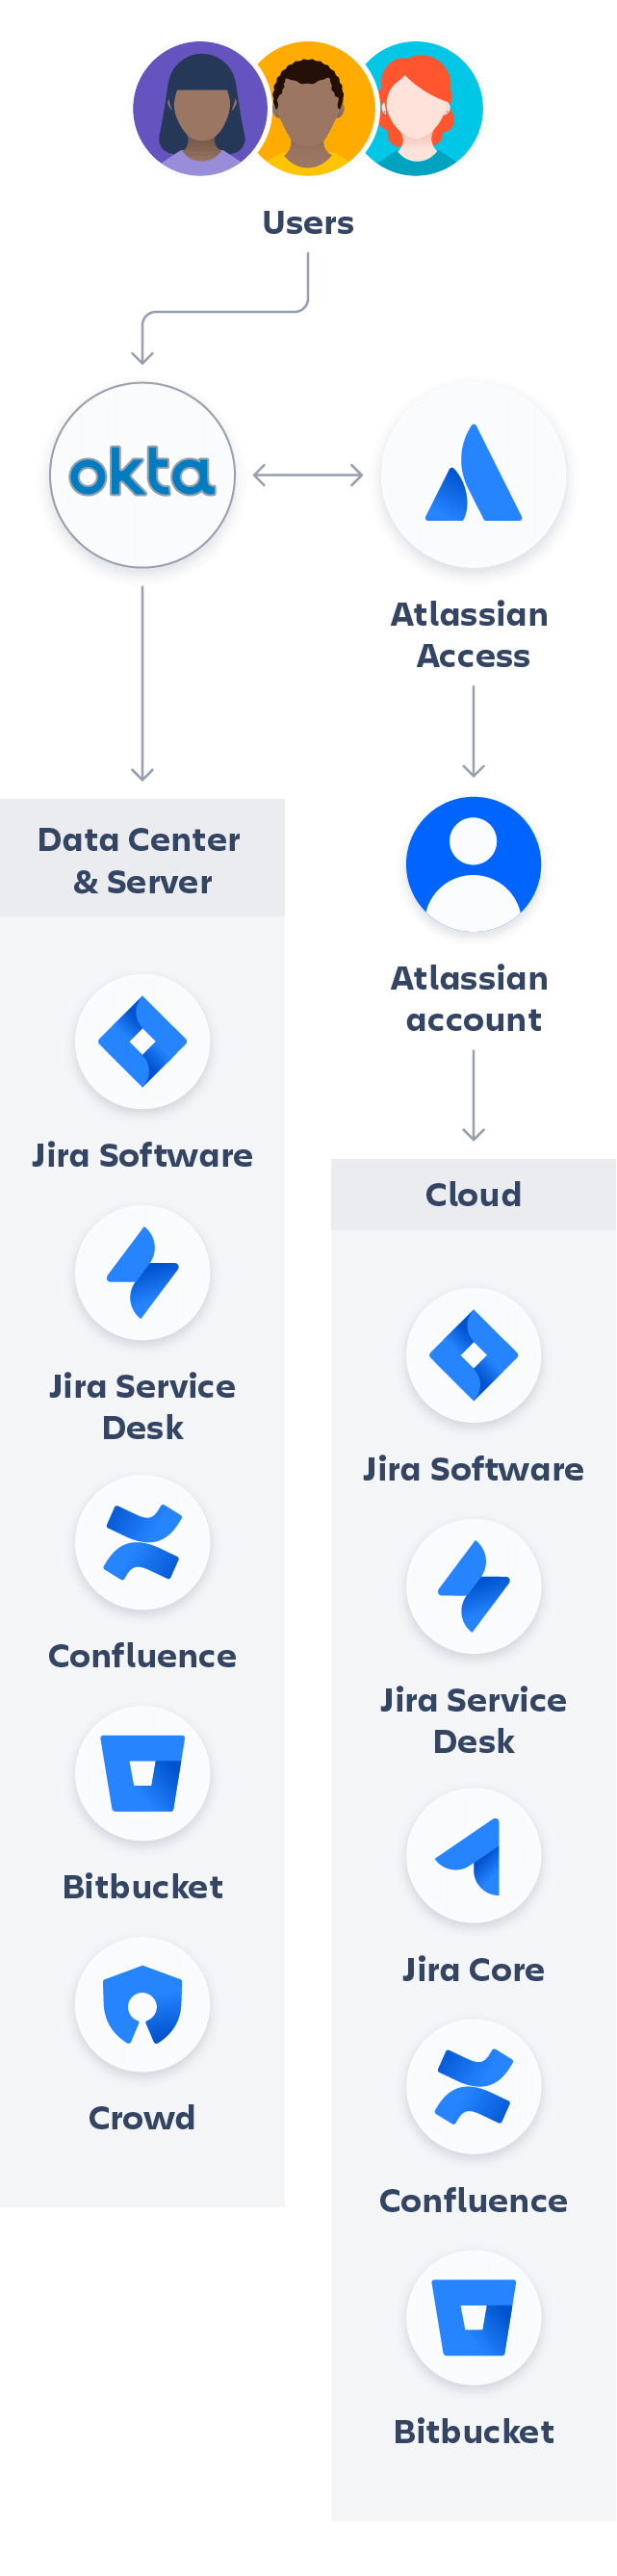 Diagrama de Atlassian y Okta